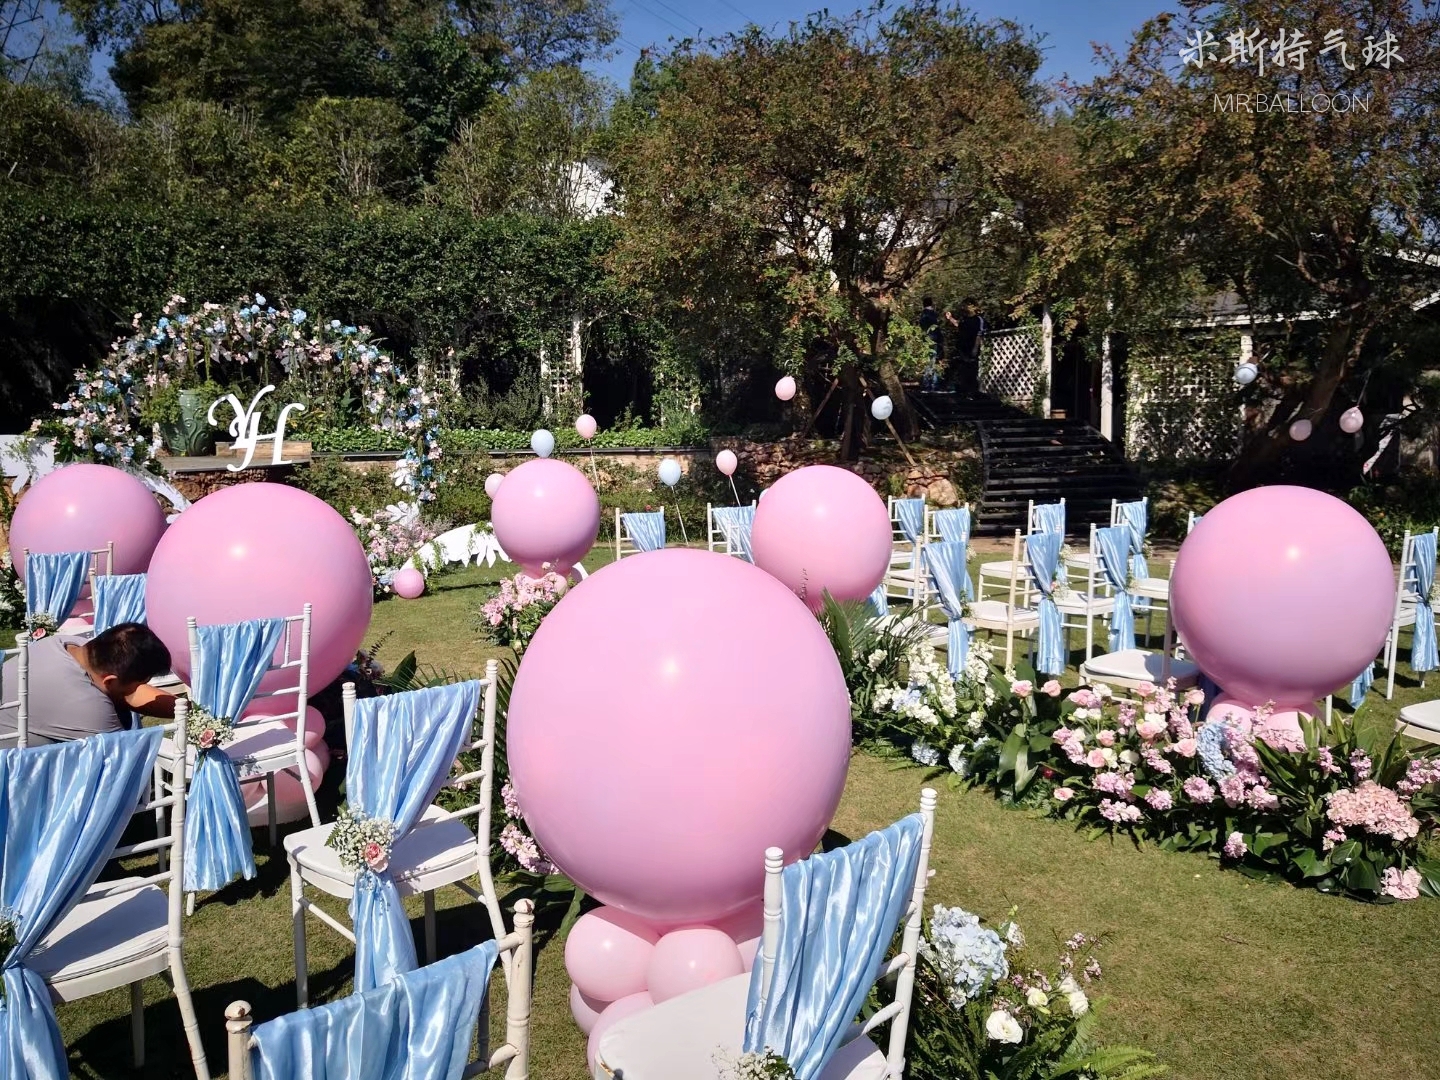 米斯特气球:株洲室外创意唯美婚礼气球布置案例分享